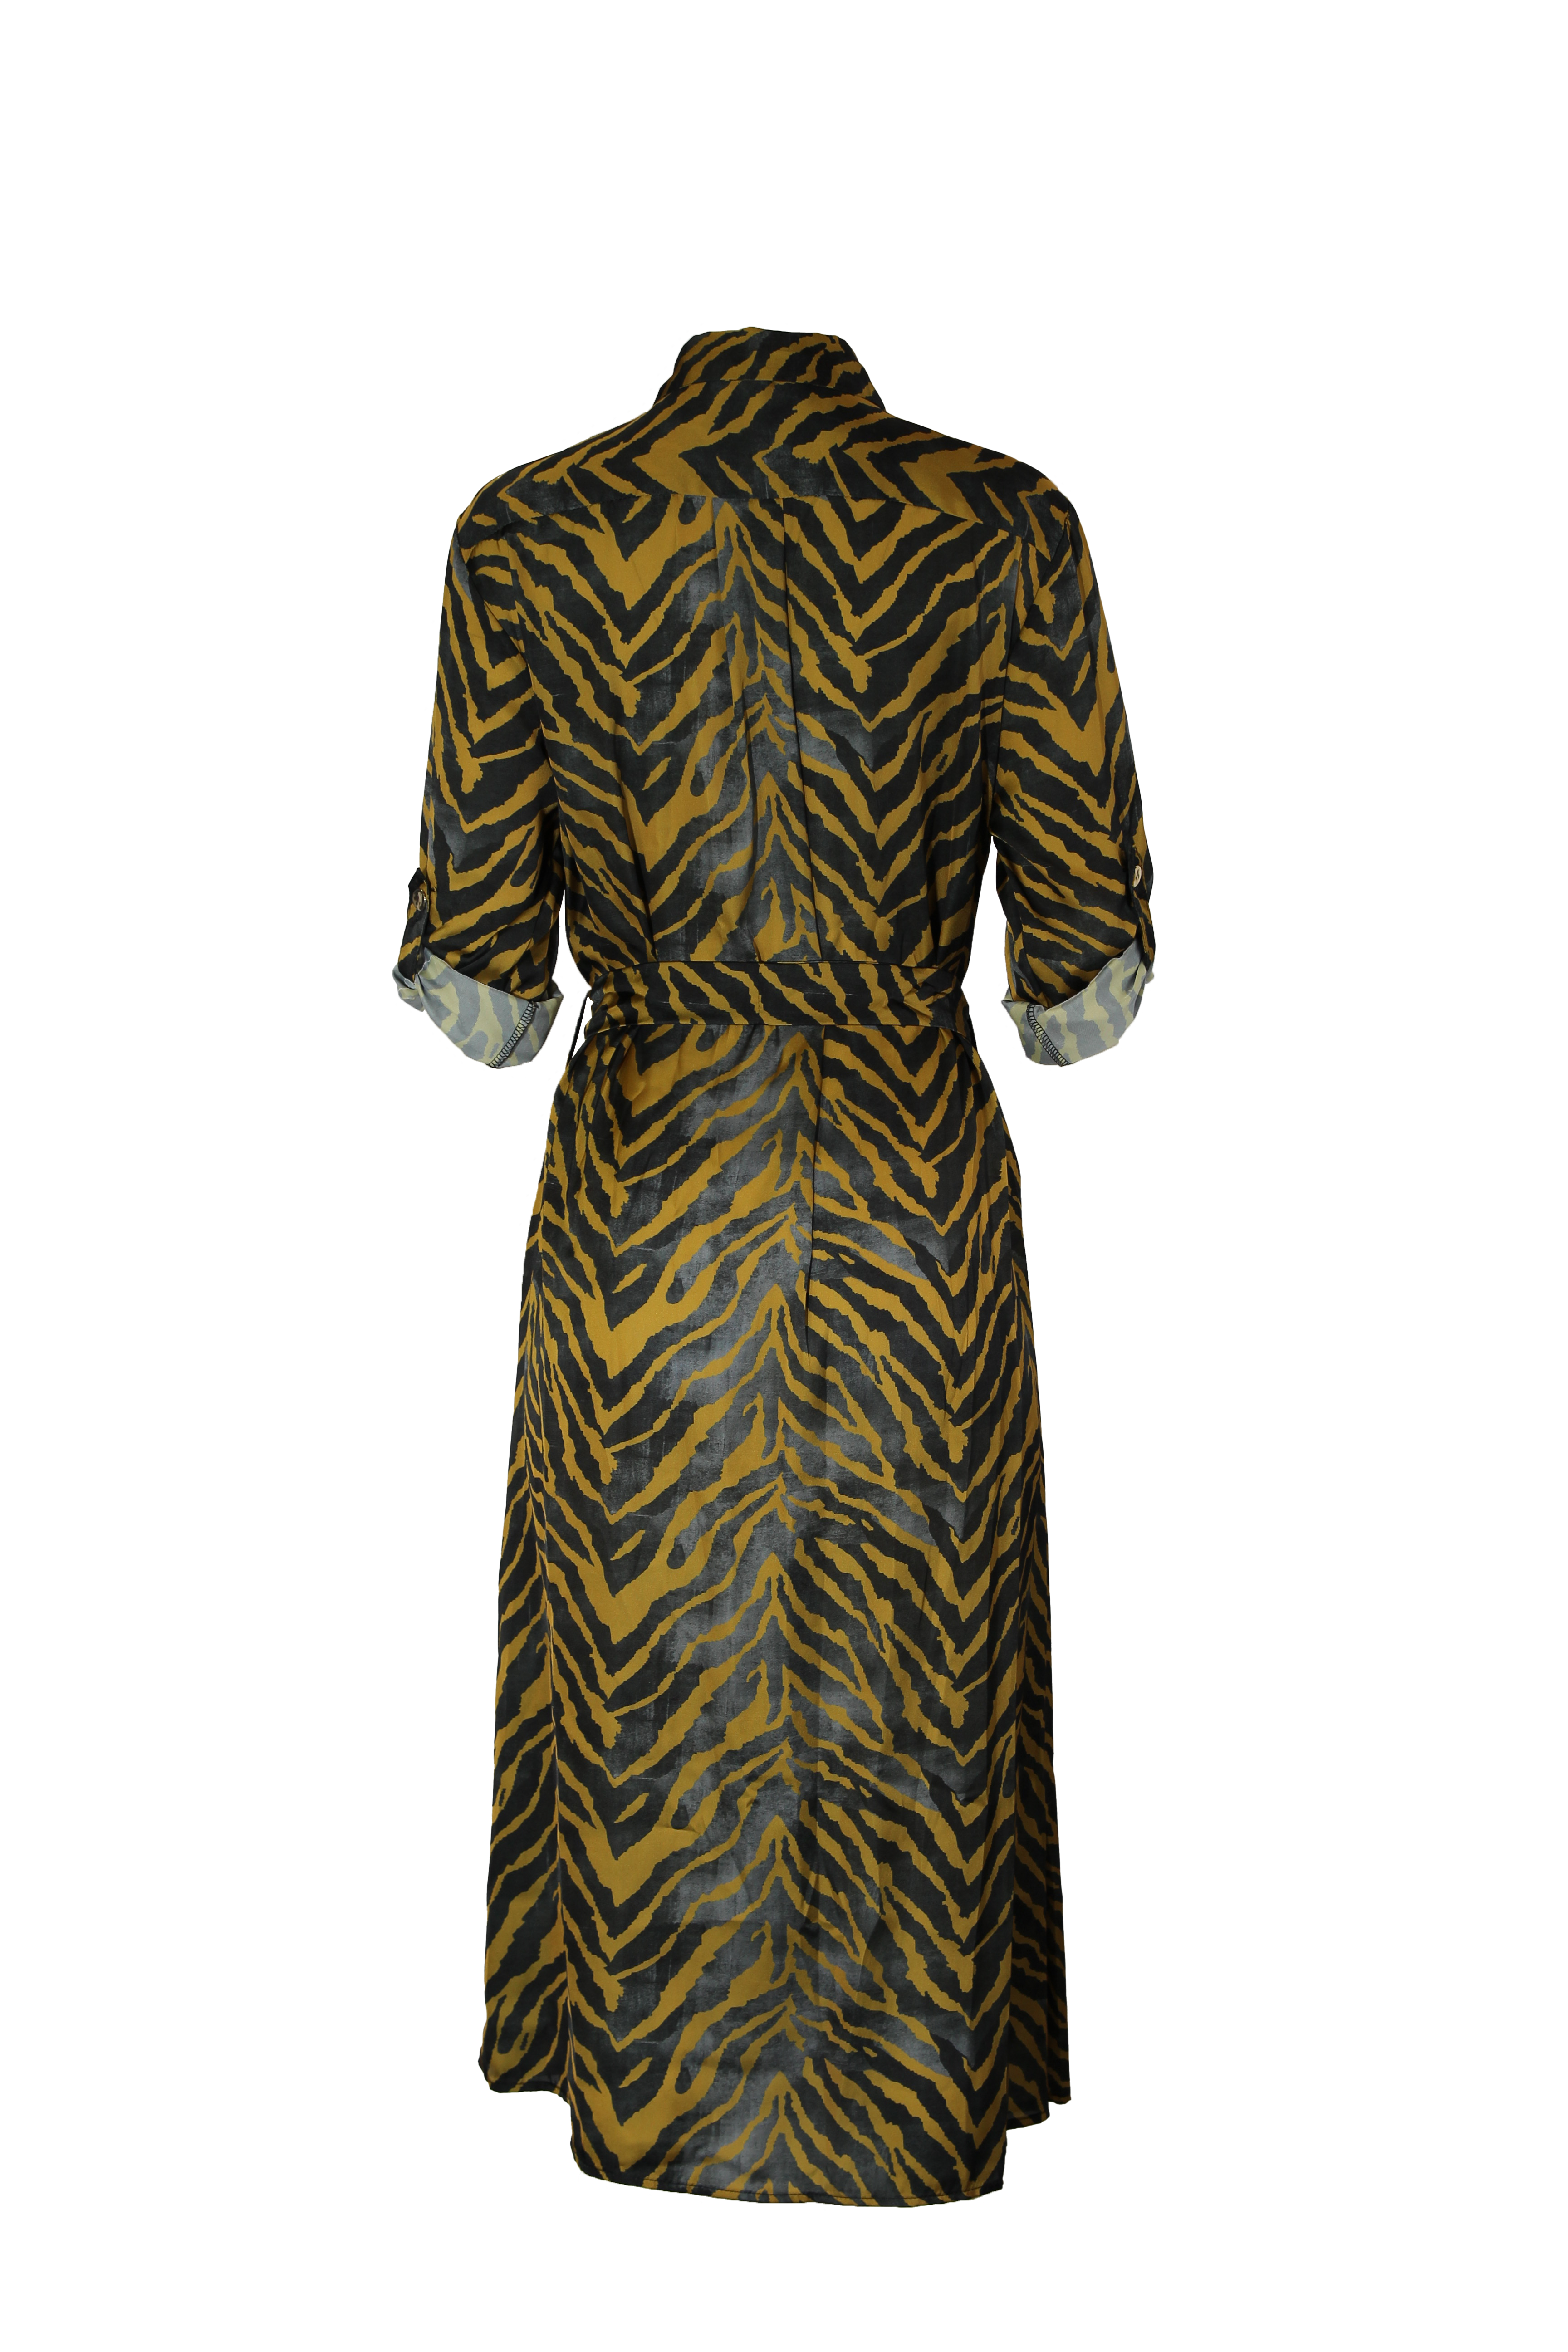 vestido-acetinado-zebra-3